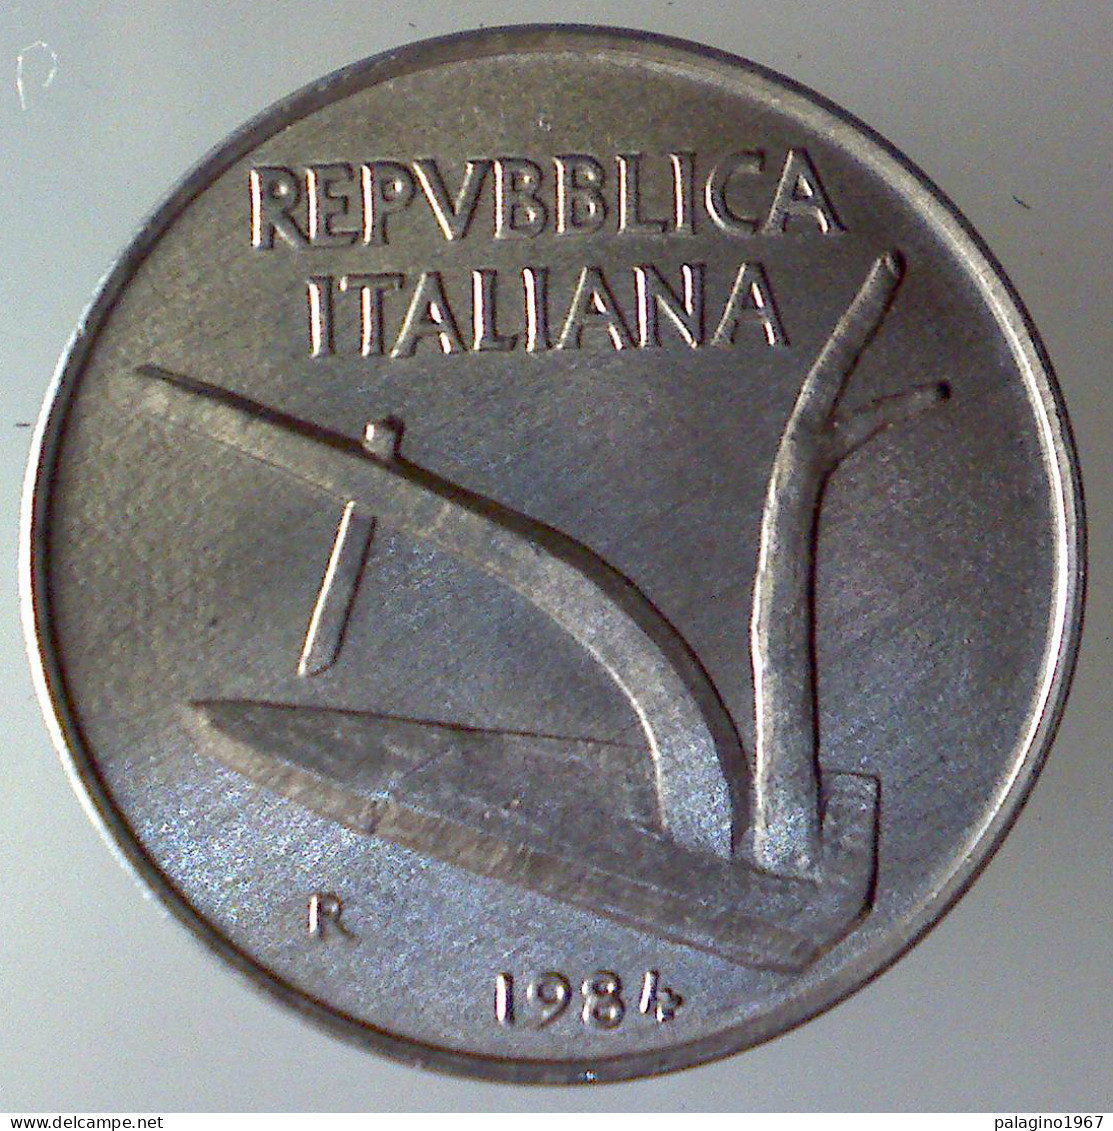 REPUBBLICA ITALIANA 10 Lire Spighe 1984 FDC  - 10 Liras